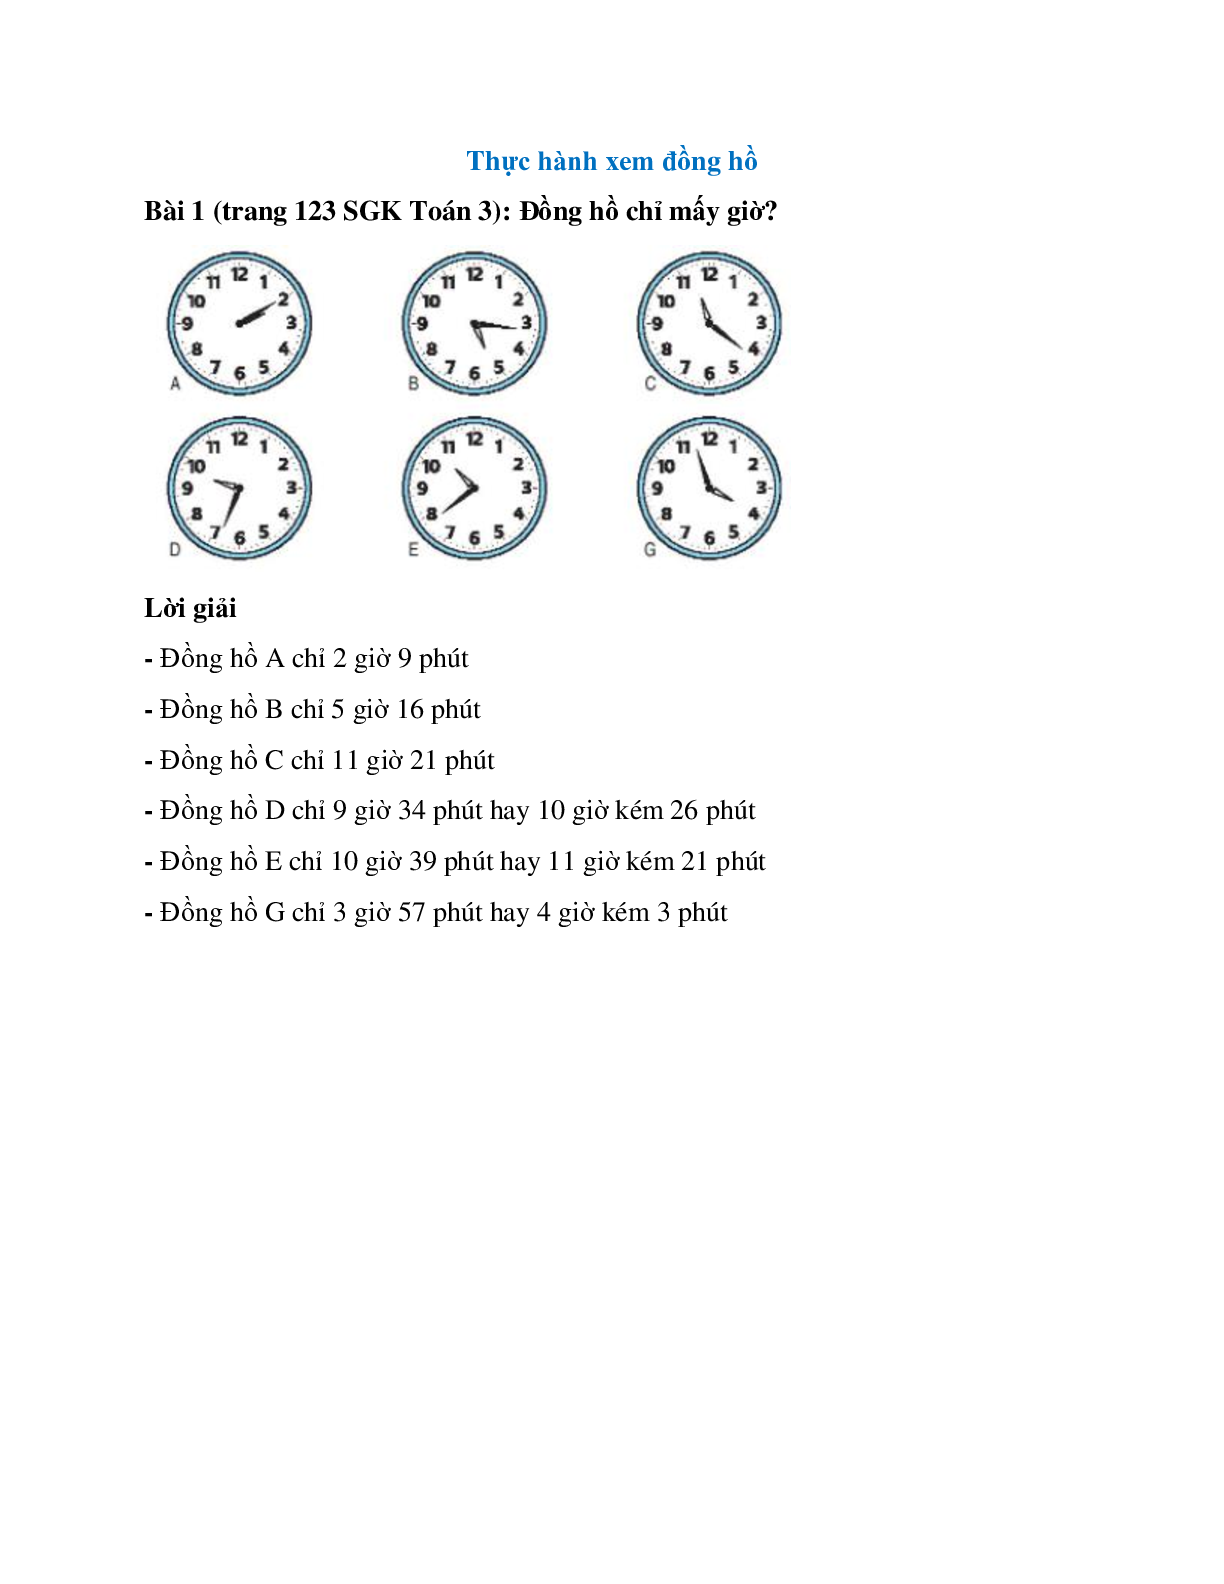 Đồng hồ chỉ mấy giờ Bài 1 trang 123 SGK Toán 3 (trang 1)